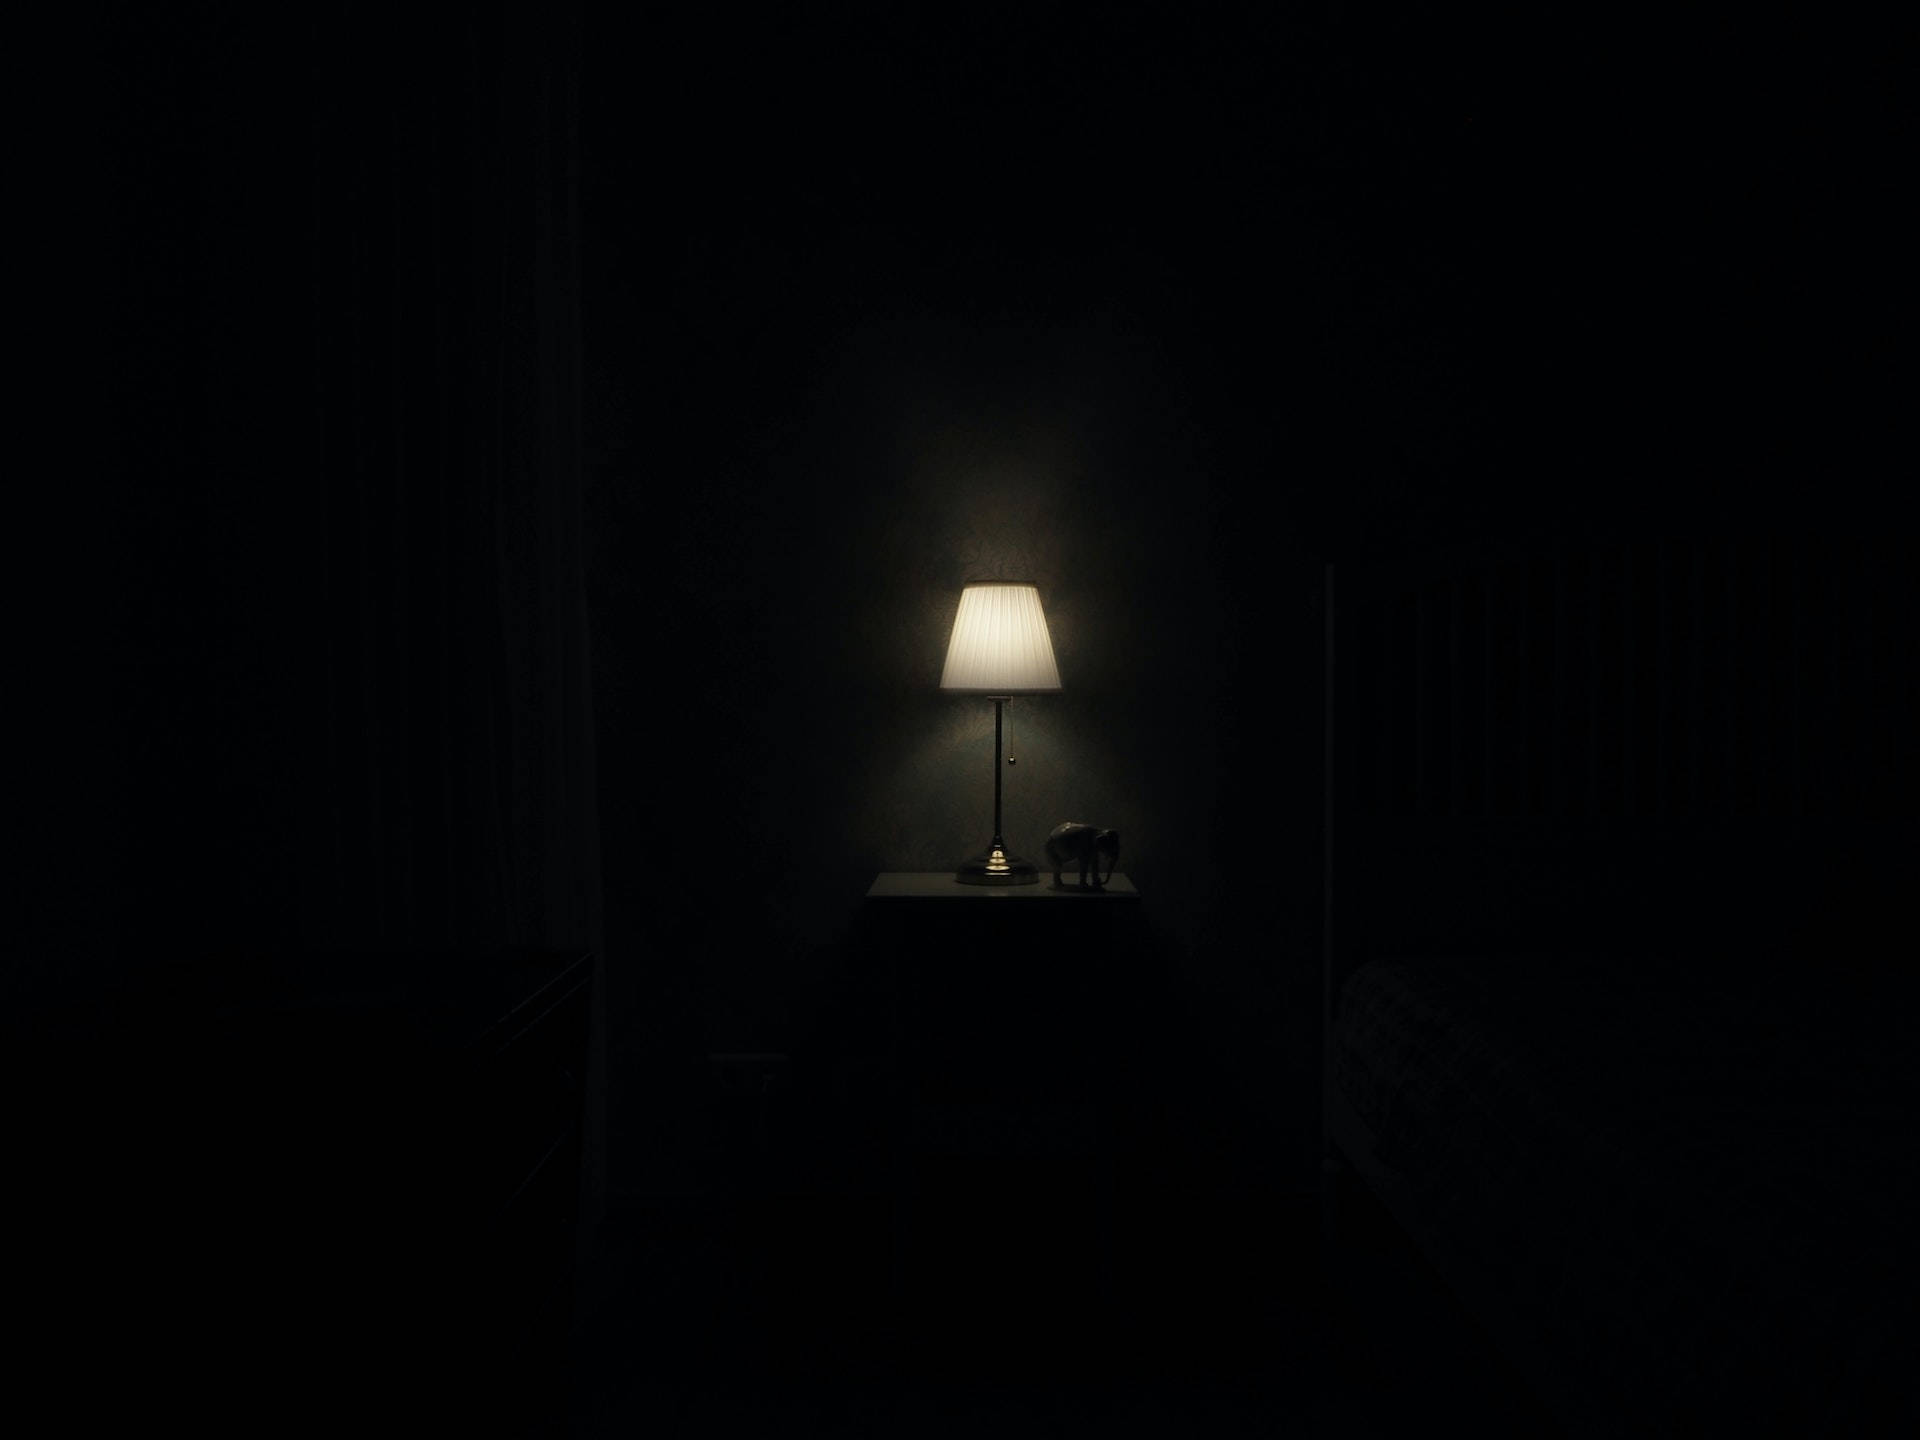 1920x1080 Hd Dark Lamp Background